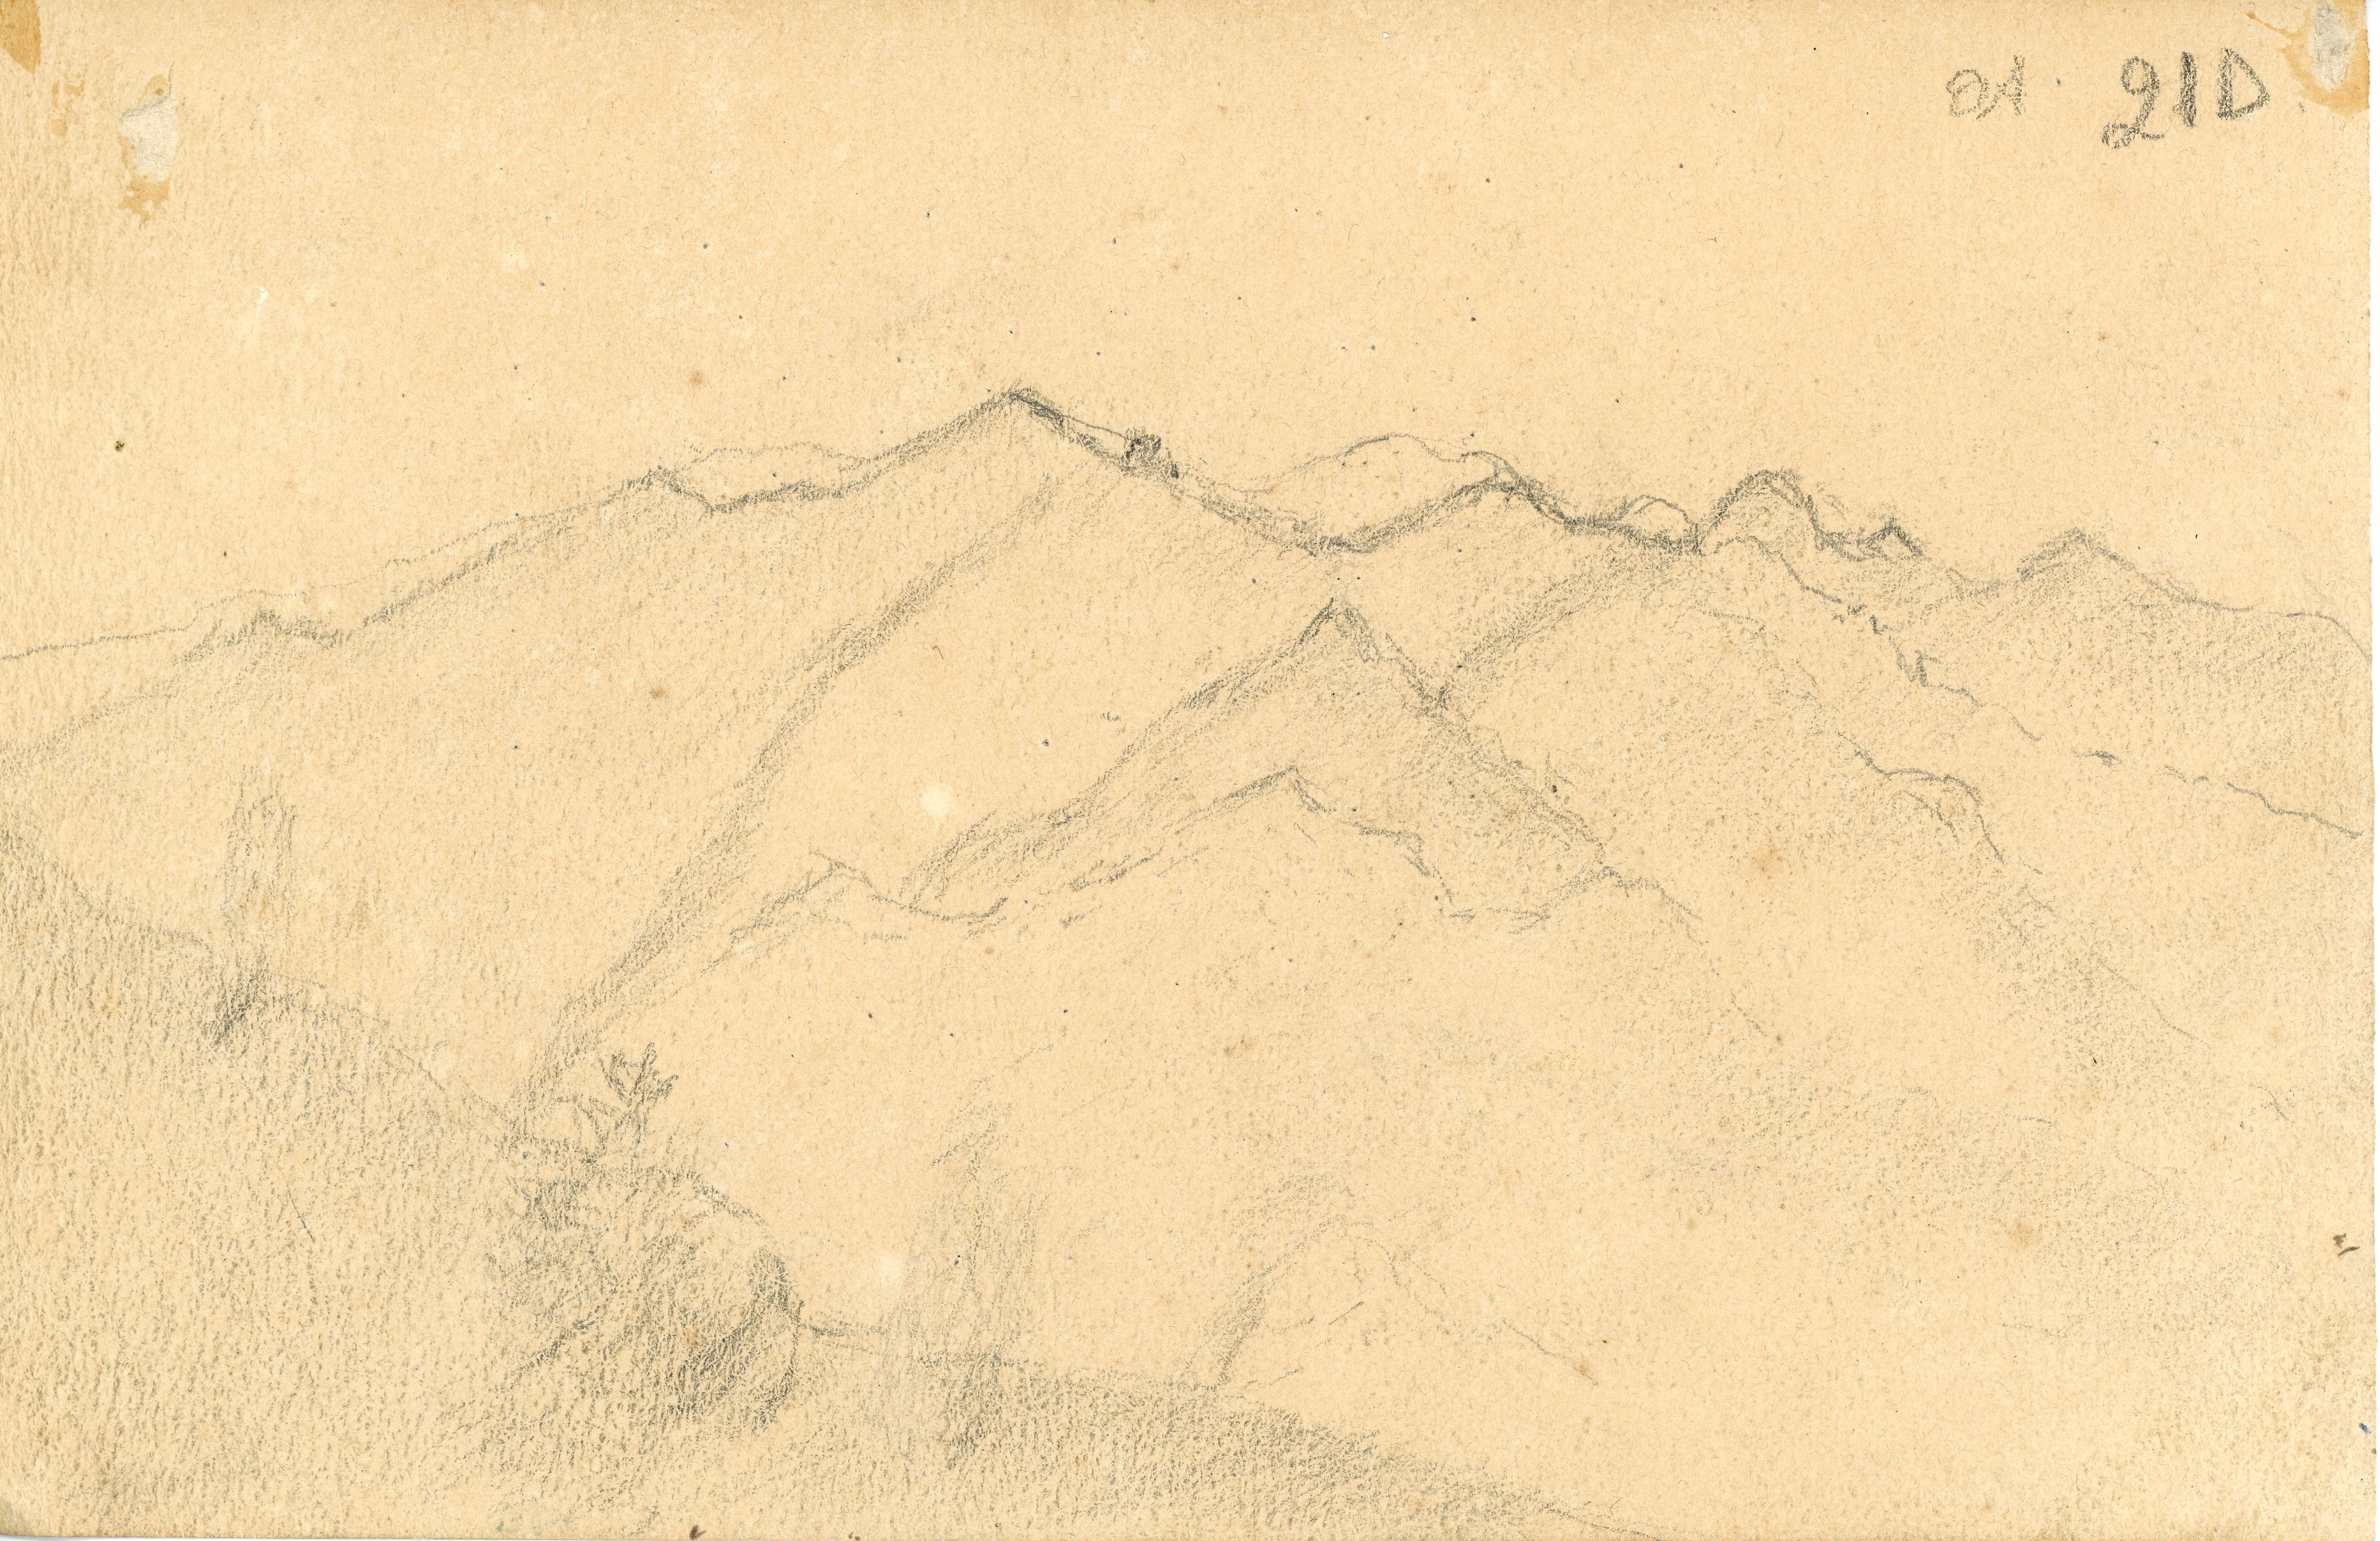 Profilo di montagne (disegno) di Tominetti, Achille - ambito italiano (fine/ inizio XIX/ XX)